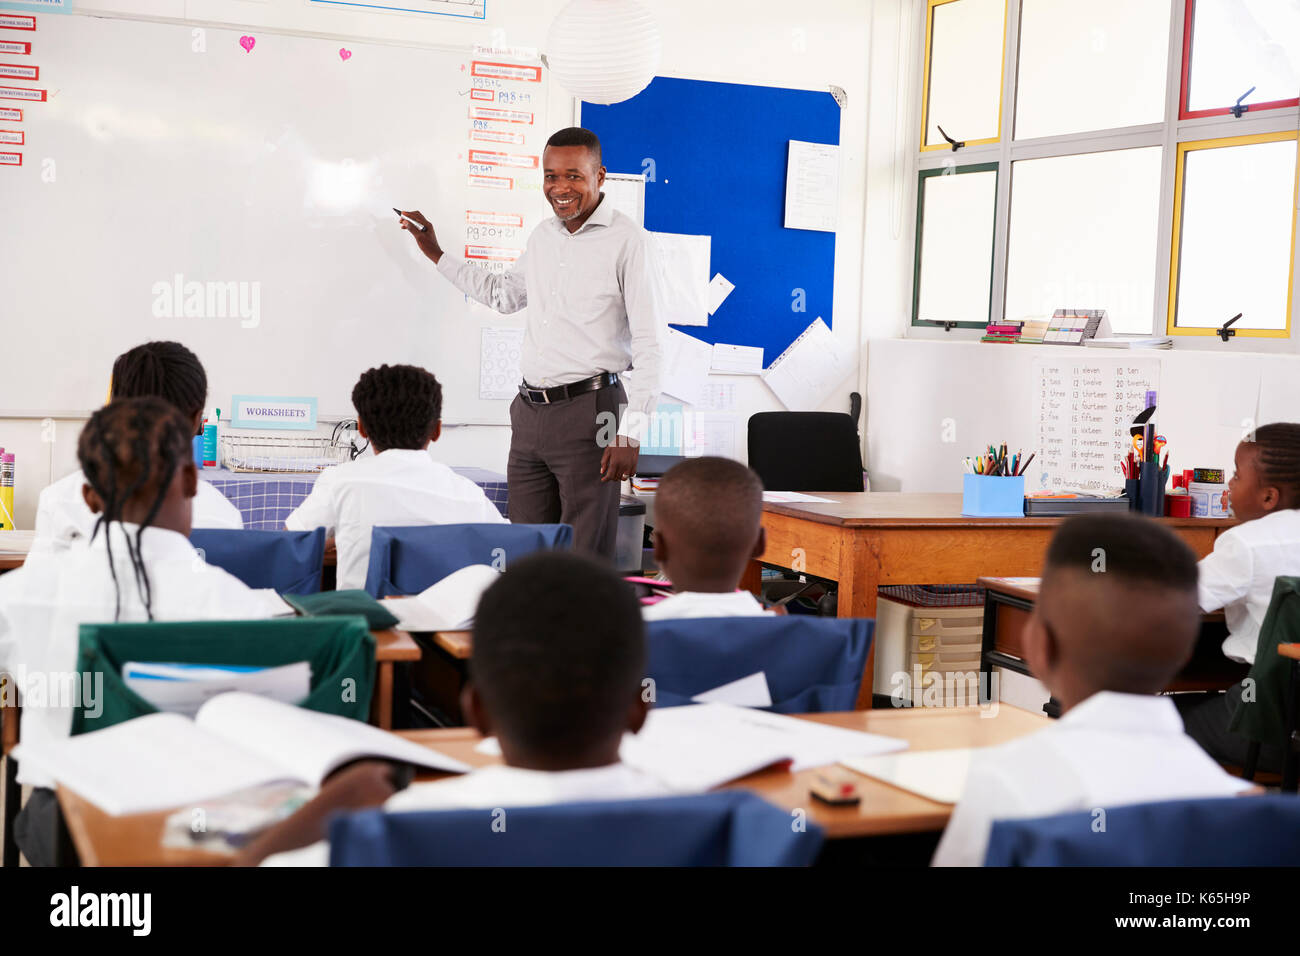 Lehrer mit Whiteboard im Unterricht an einer Volksschule Stockfotografie -  Alamy